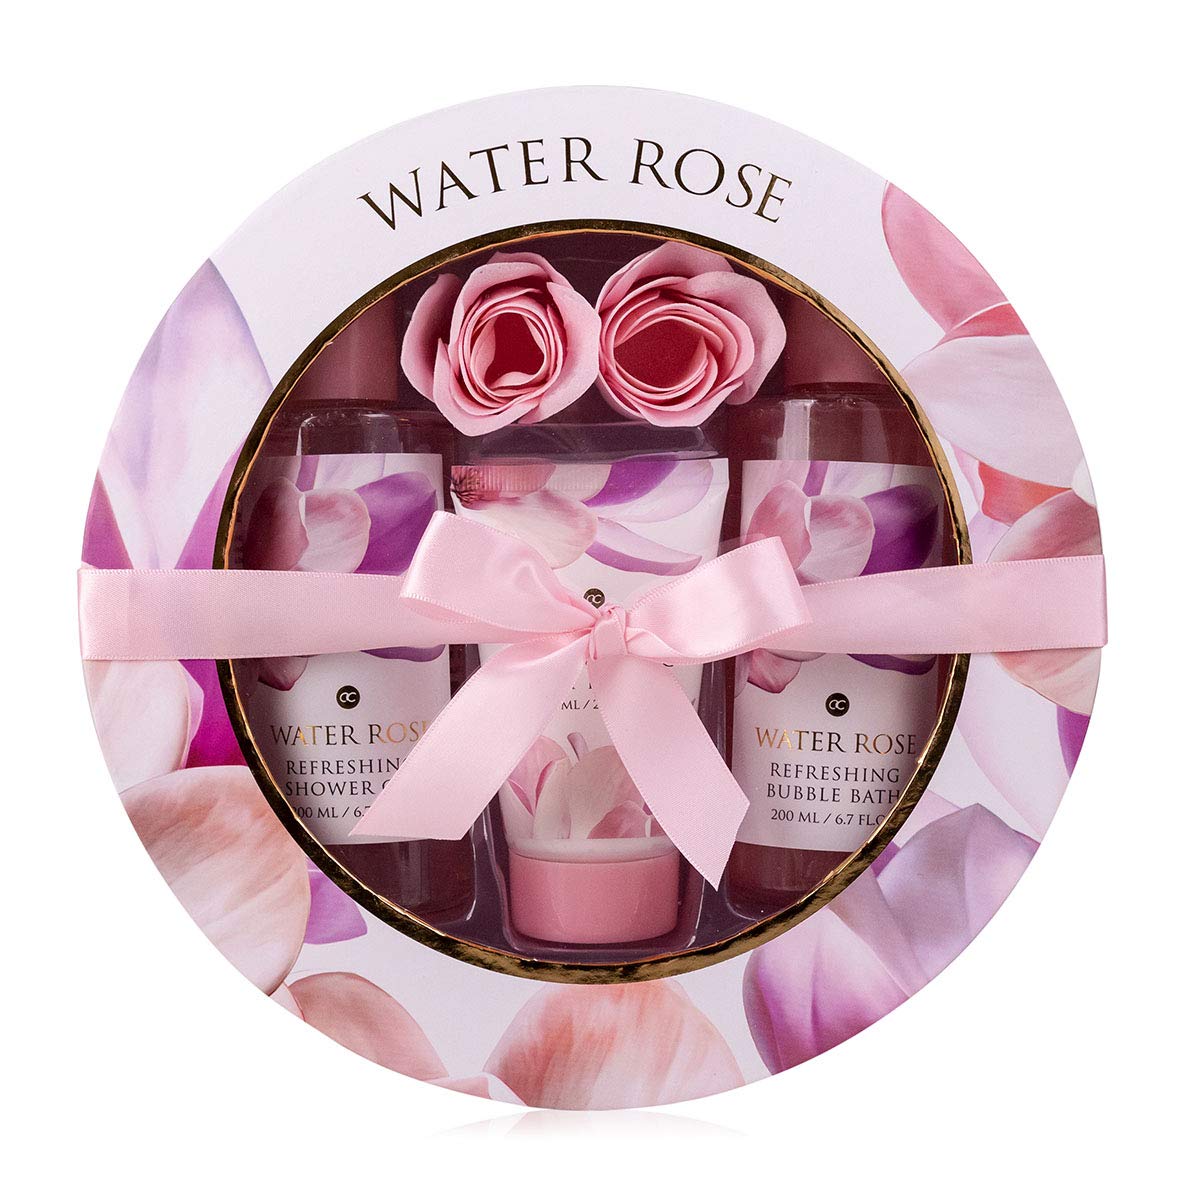 accentra Geschenkset Water Rose für Frauen, 5-teiliges Geschenk-Set in ansprechender Geschenkschachtel